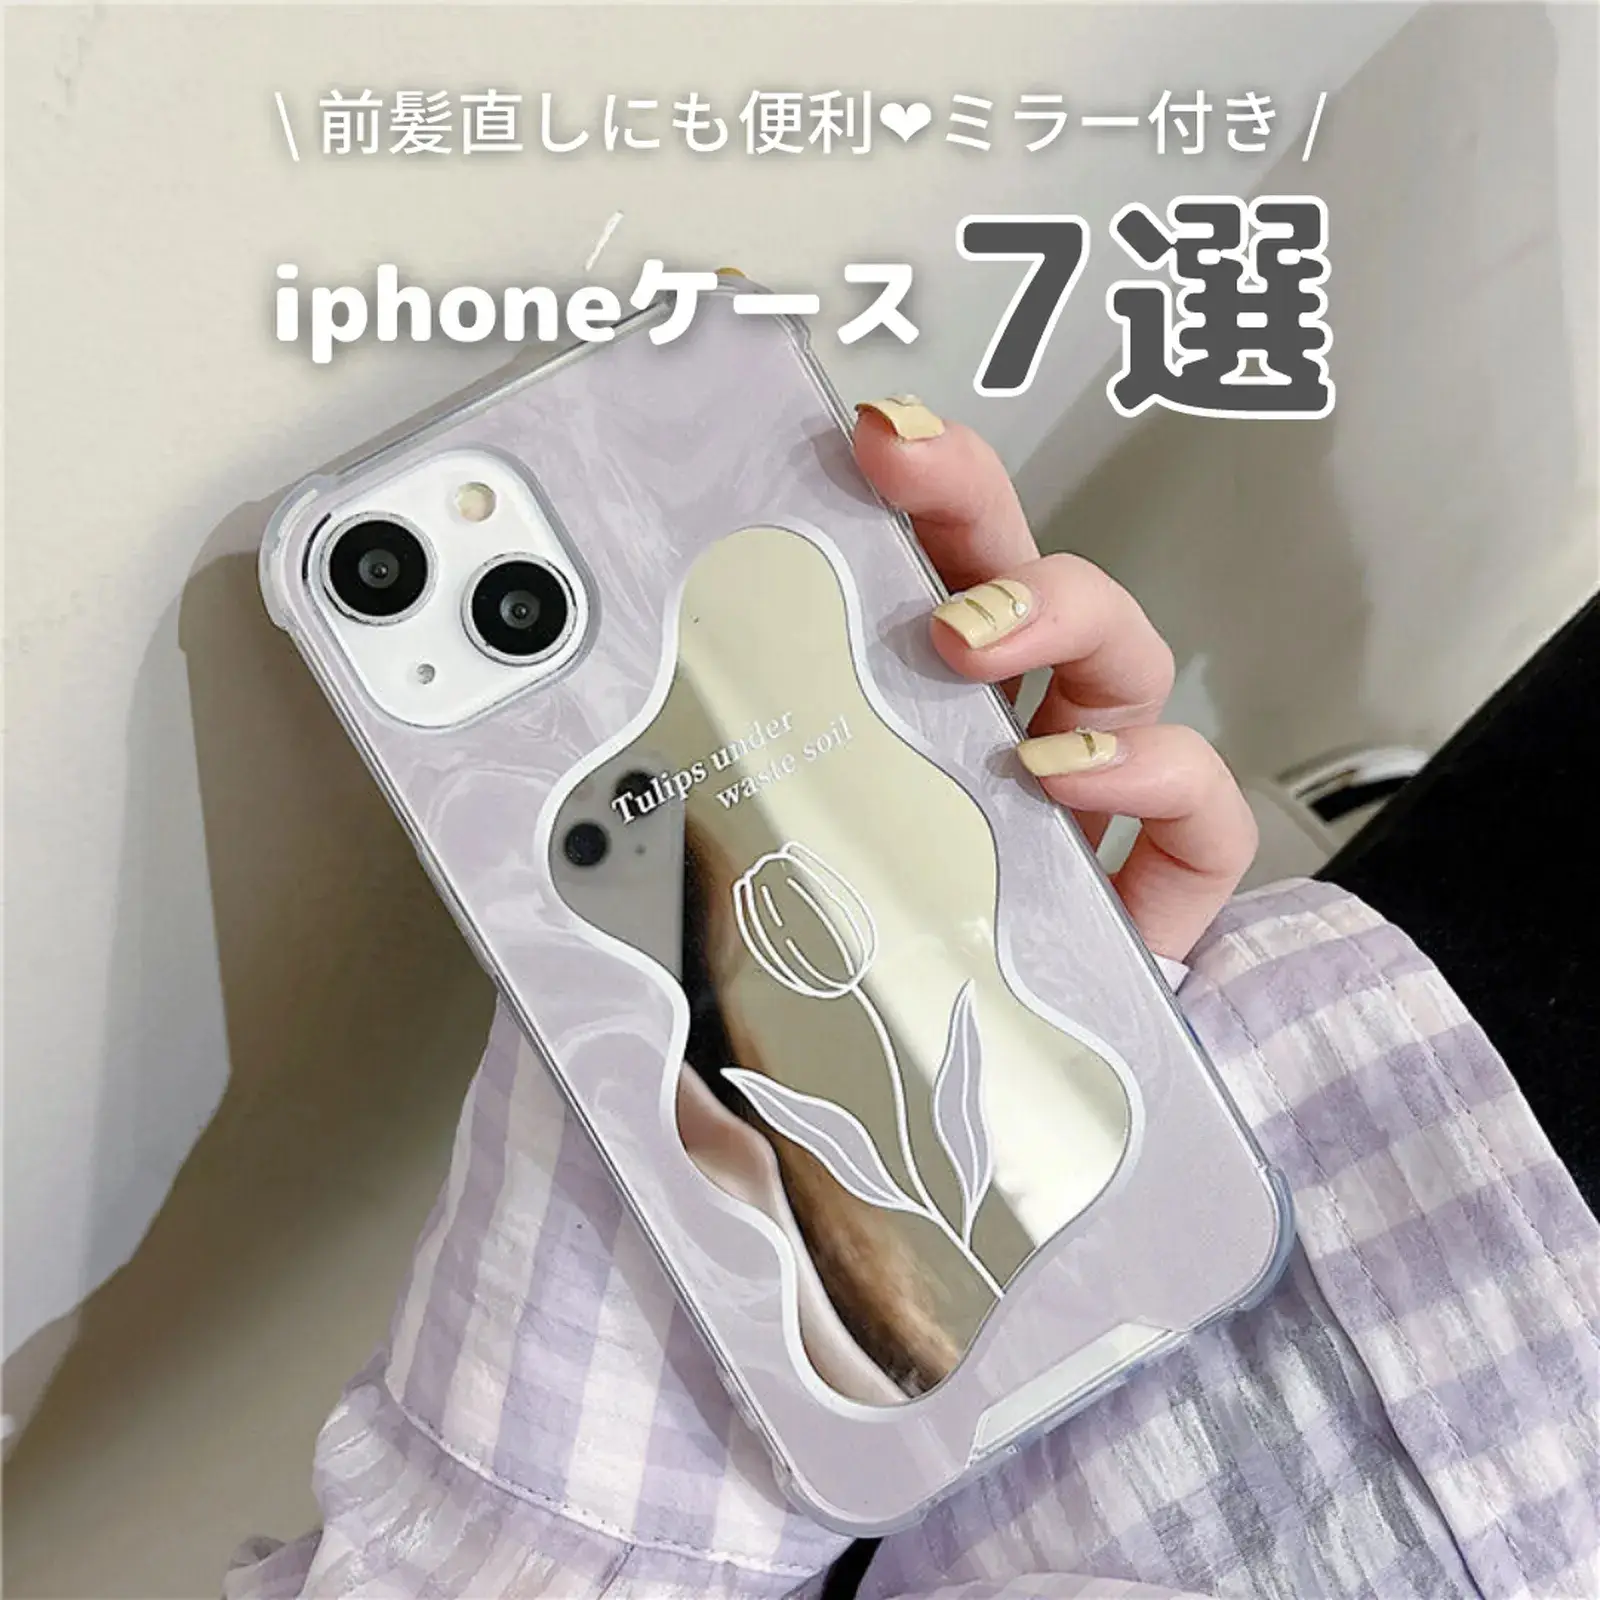 Iphoneケース ミラー - Lemon8検索